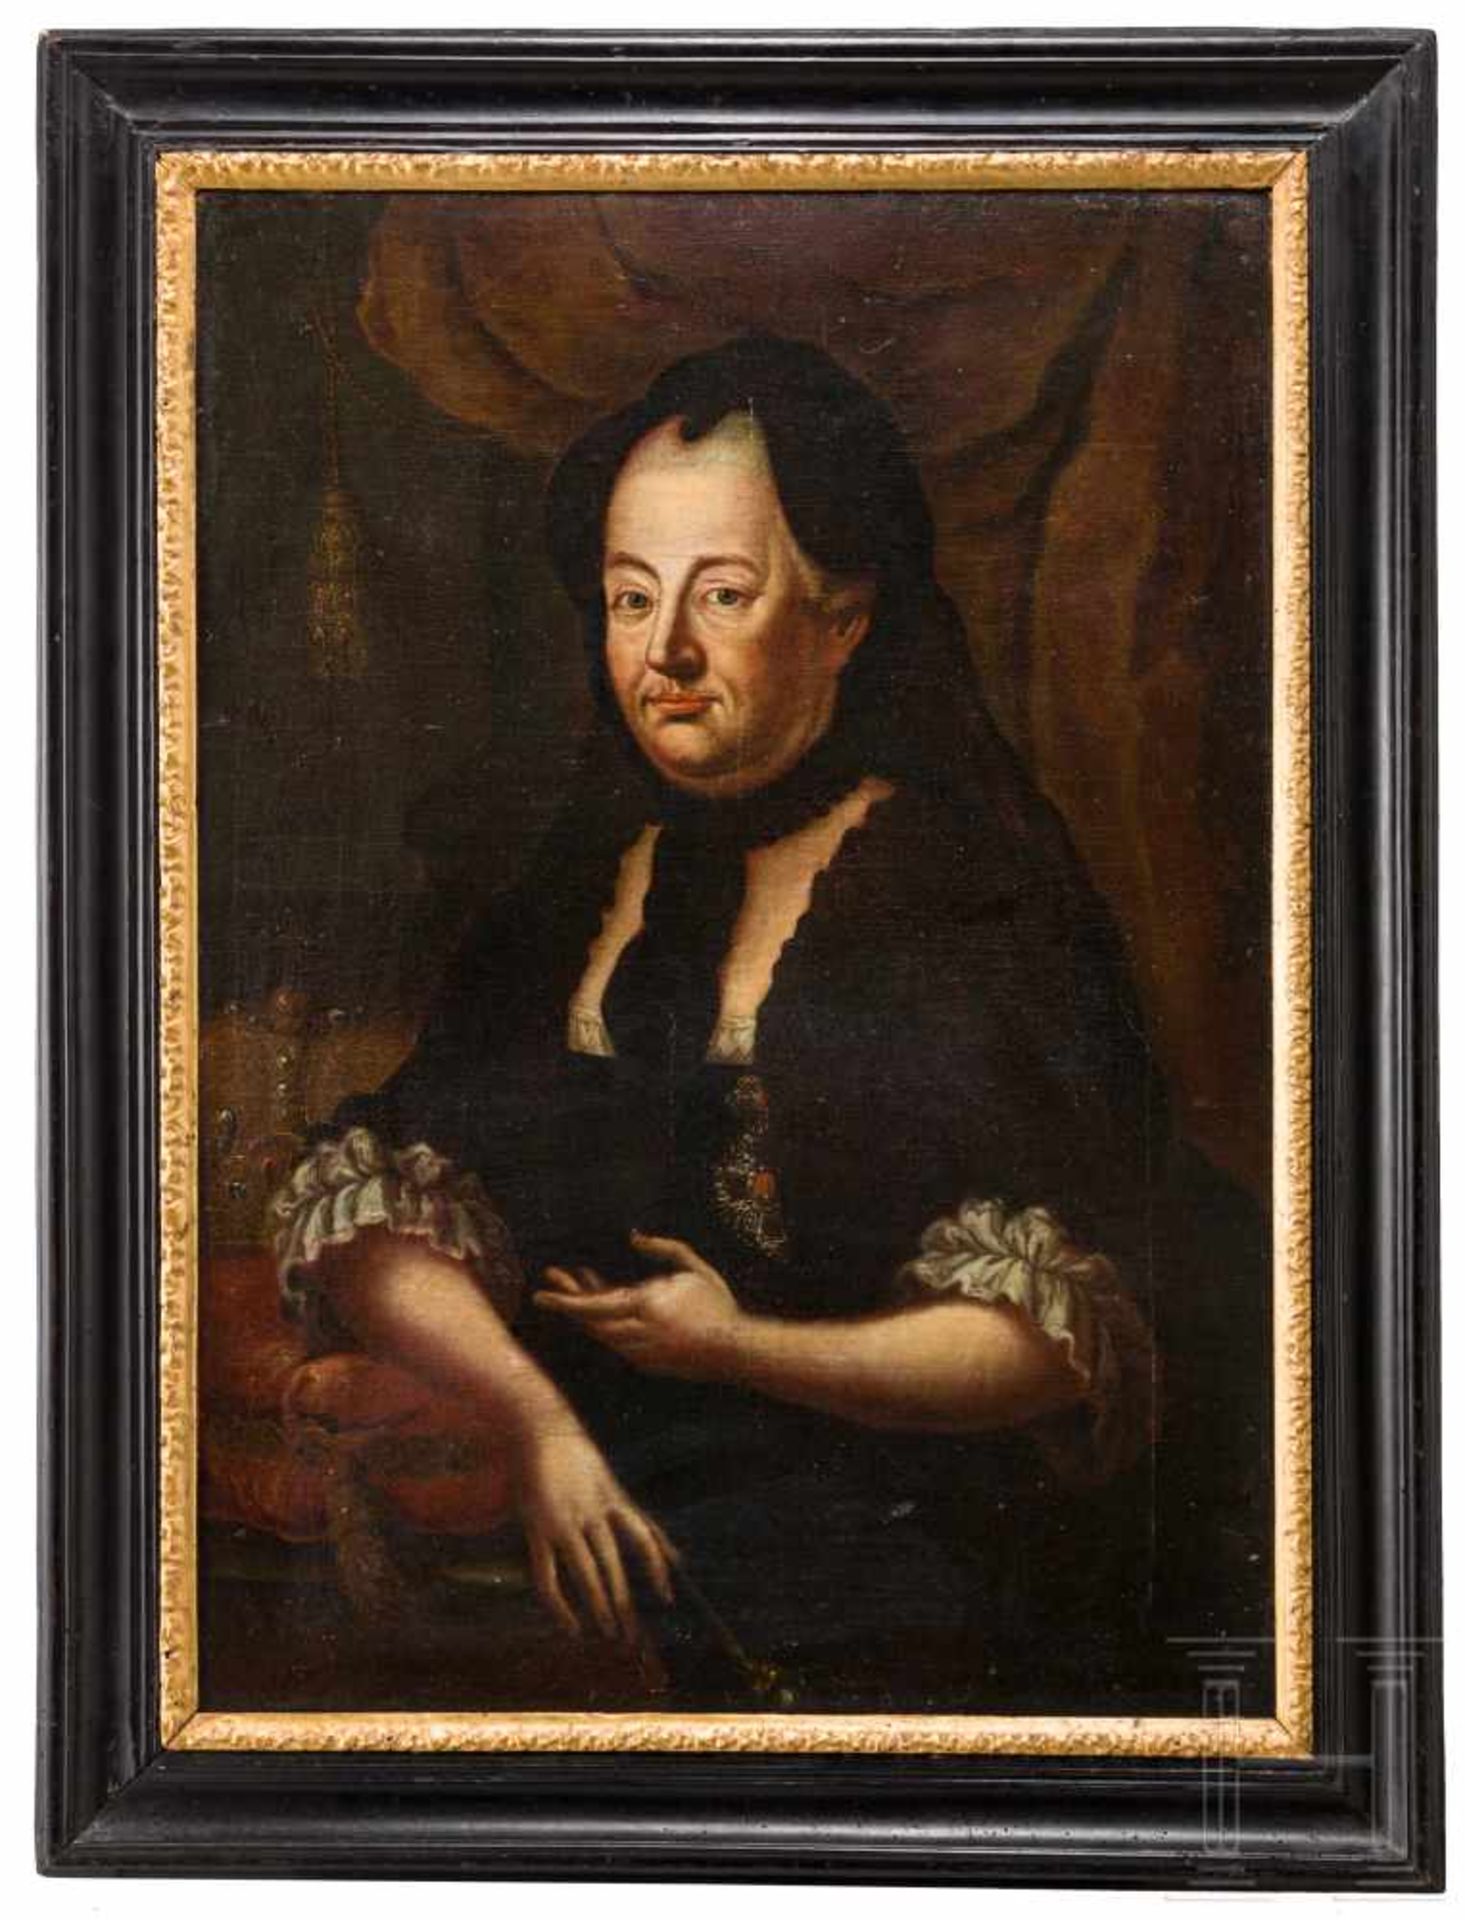 Kaiserin Maria Theresia von Österreich (1717-80) - Portraitgemälde in schwarzer TrauerkleidungÖl auf